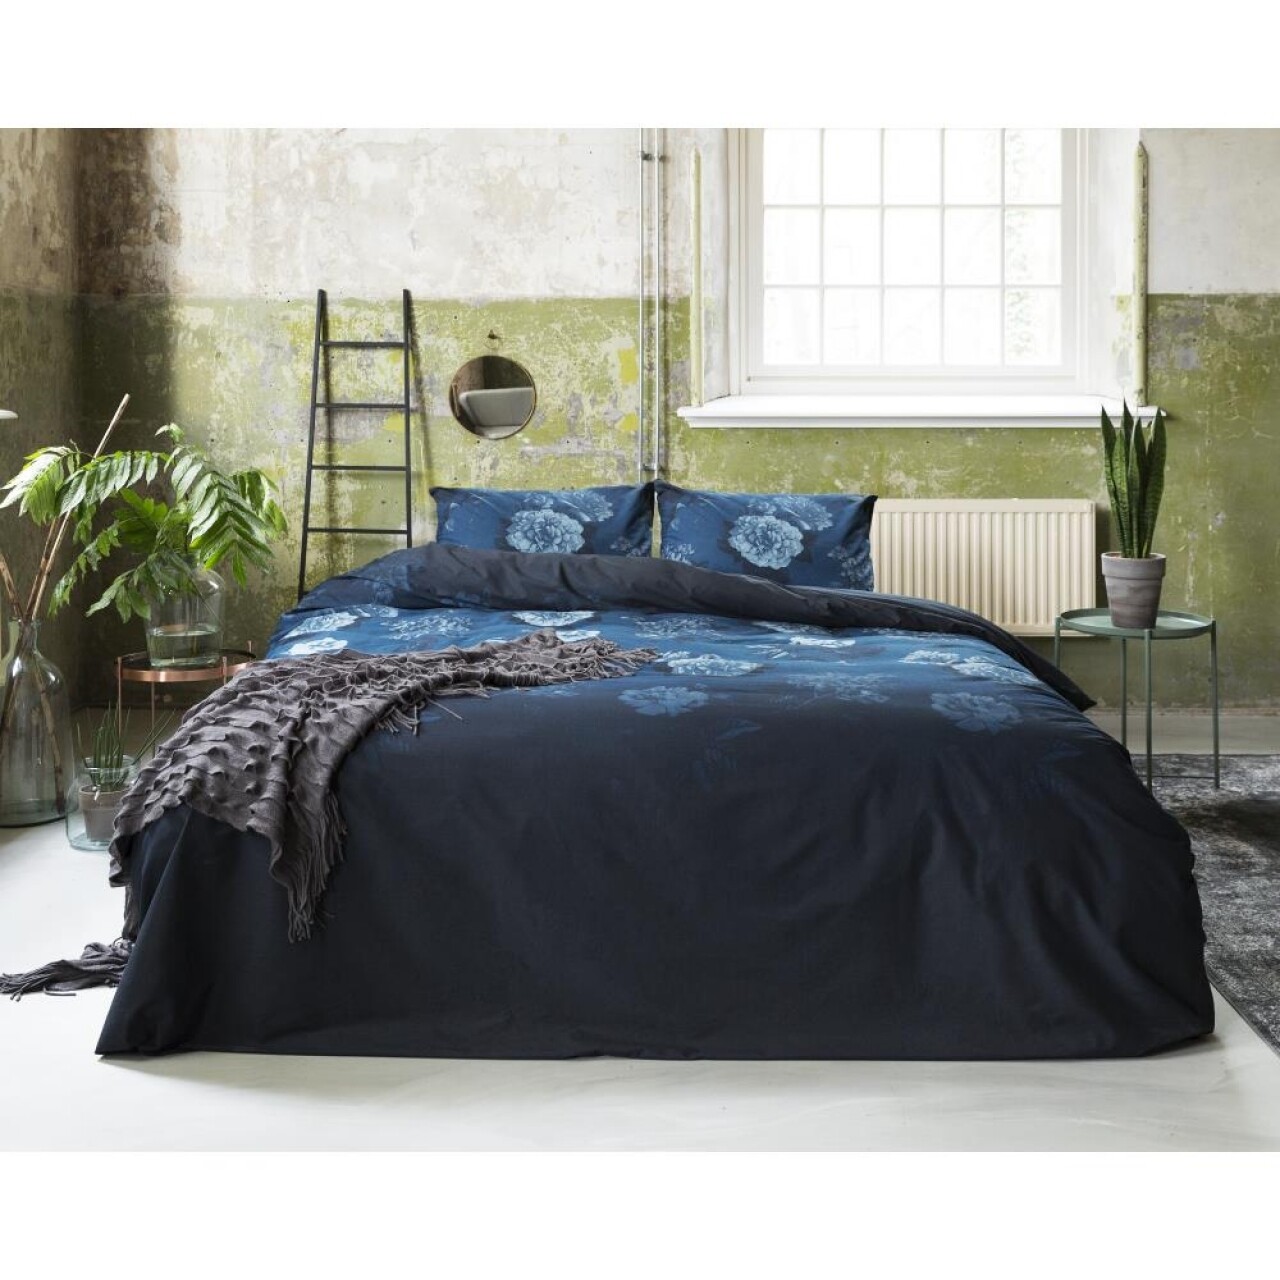 Lenjerie De Pat Dubla Blue Morning - Primavera Deluxe, Royal Textile, 3 Piese, 240 X 260 Cm, 100% Bumbac, Multicolor